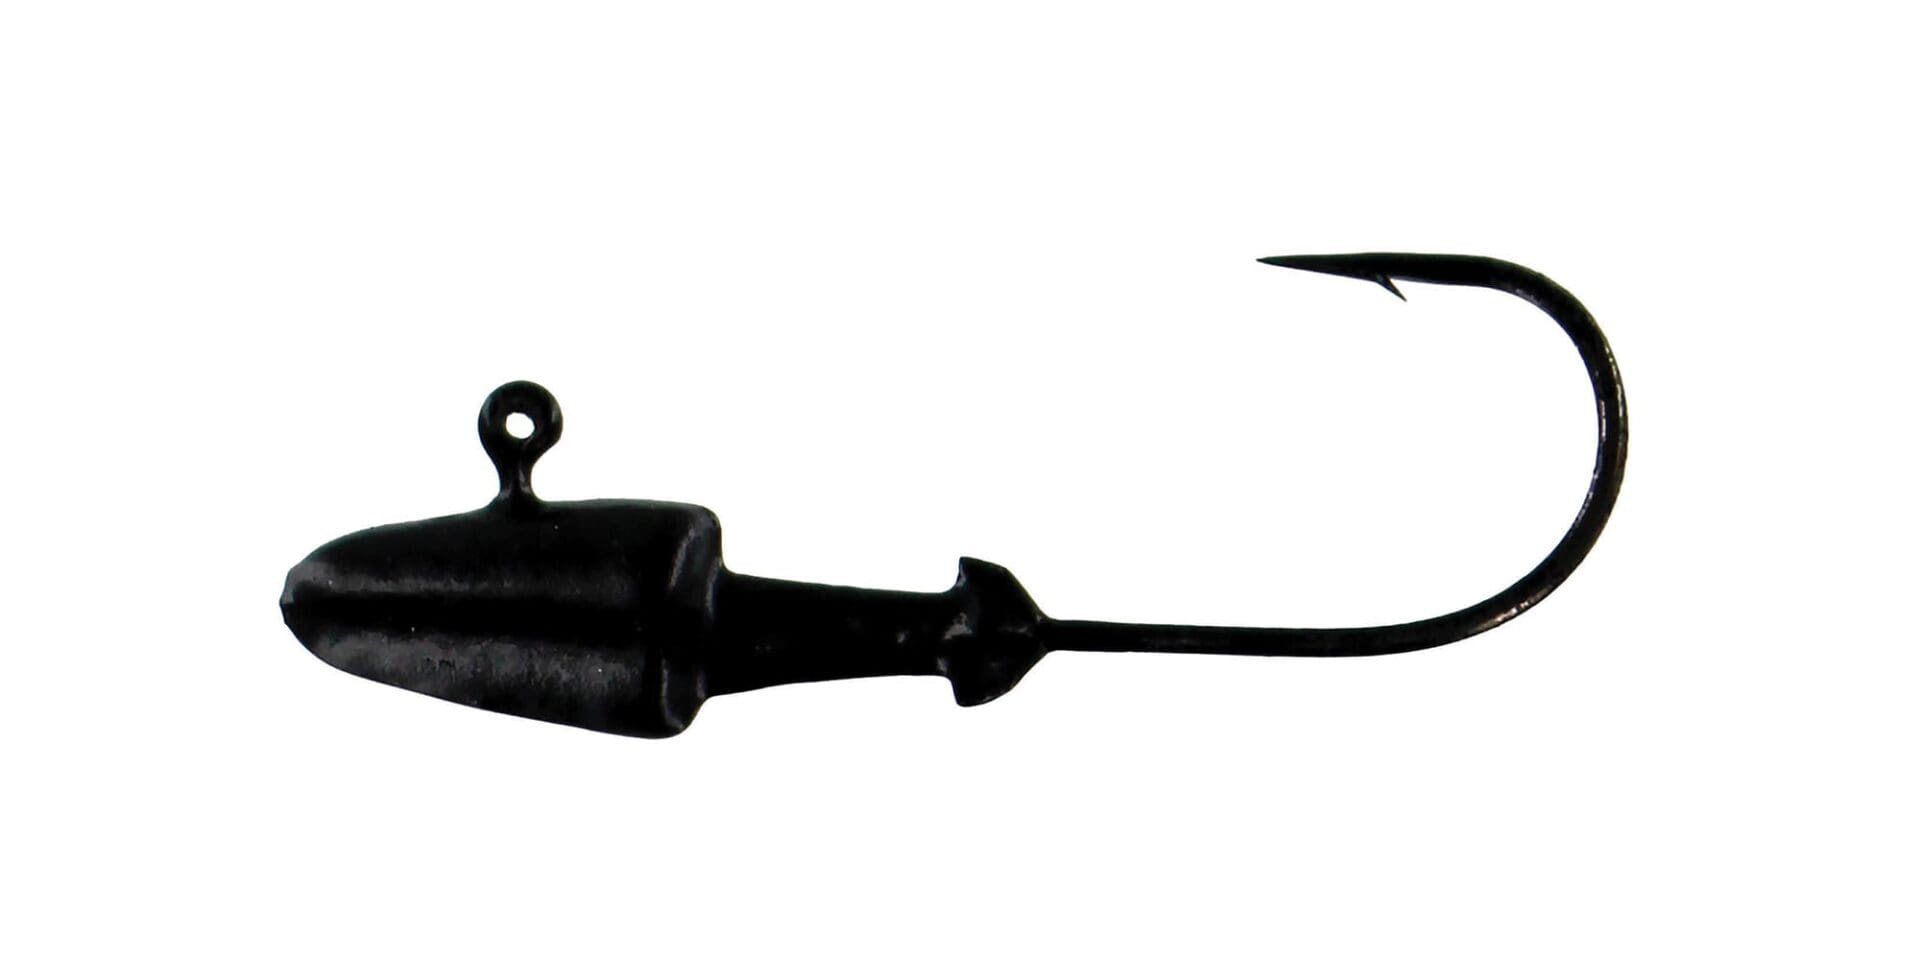 Owner 5147-028 Ultrahead Darter Jighead 1/8 oz 1/0 Hook Black 